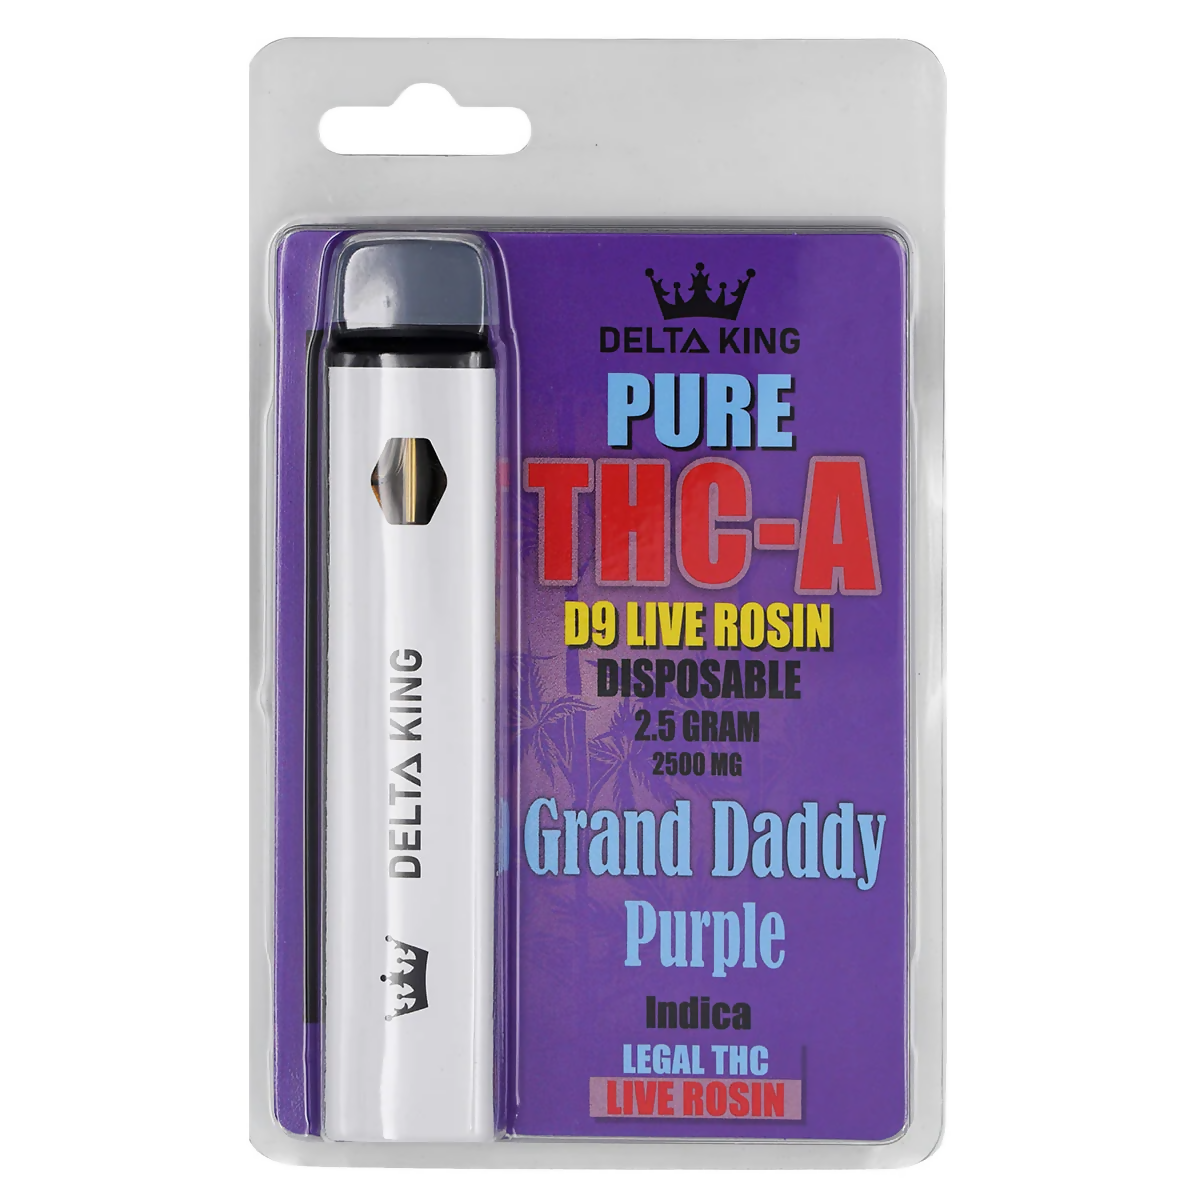 PURE THC-A Disposable Vape Pen